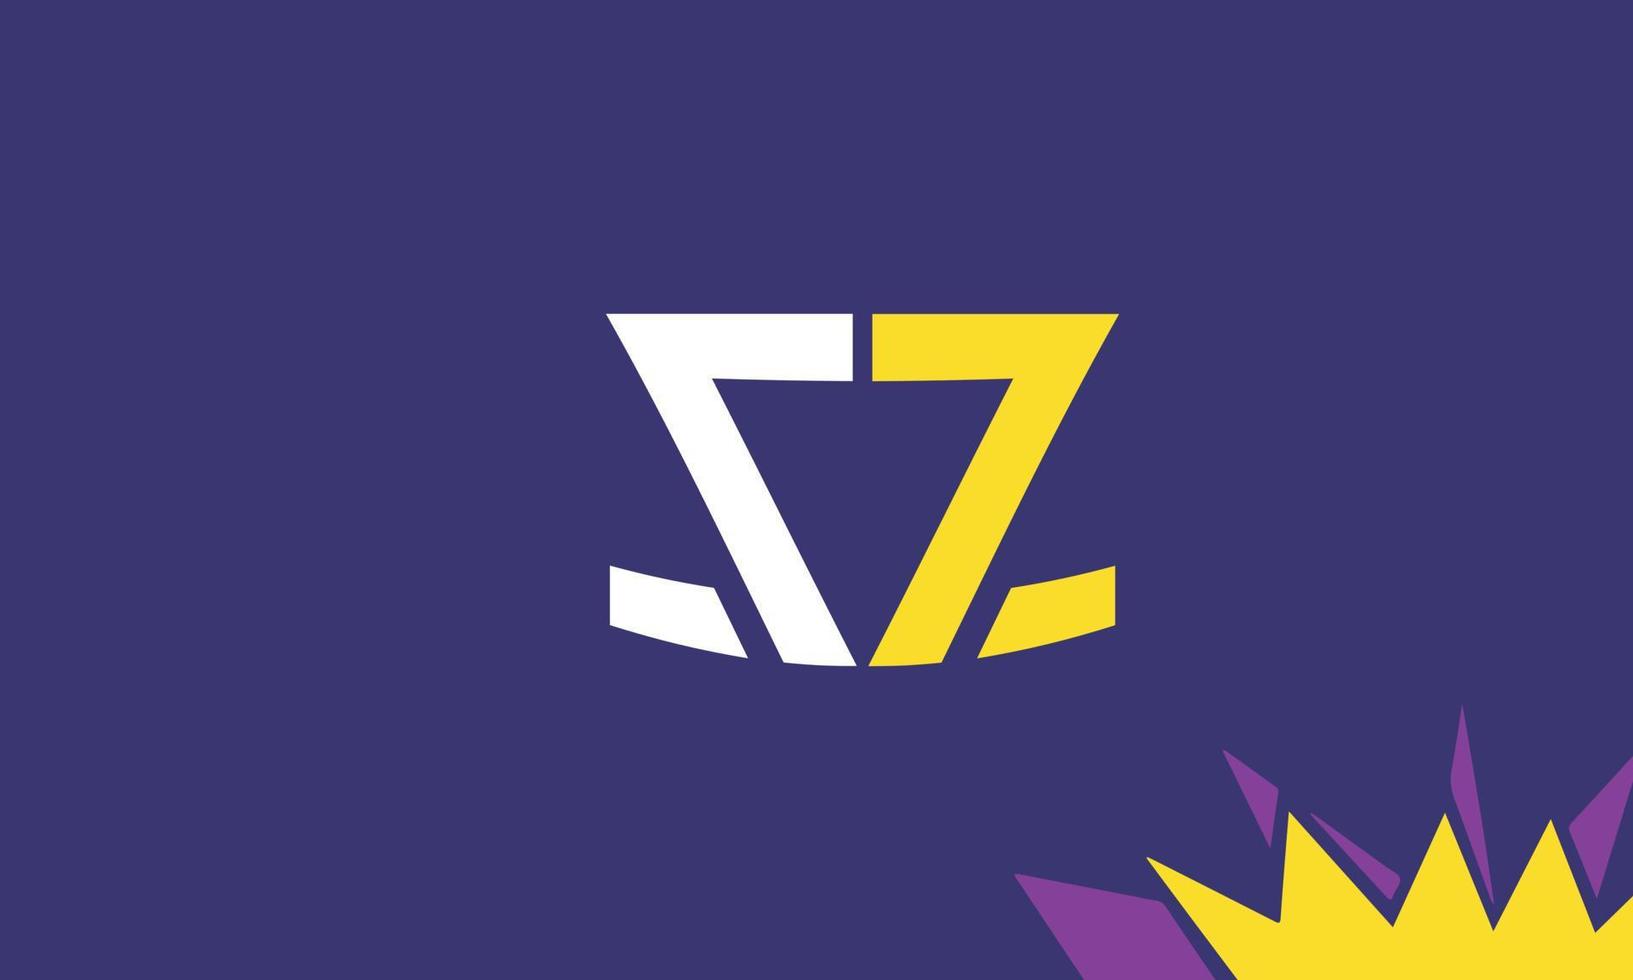 alfabeto lettere iniziali monogramma logo sz, zs, s e z vettore